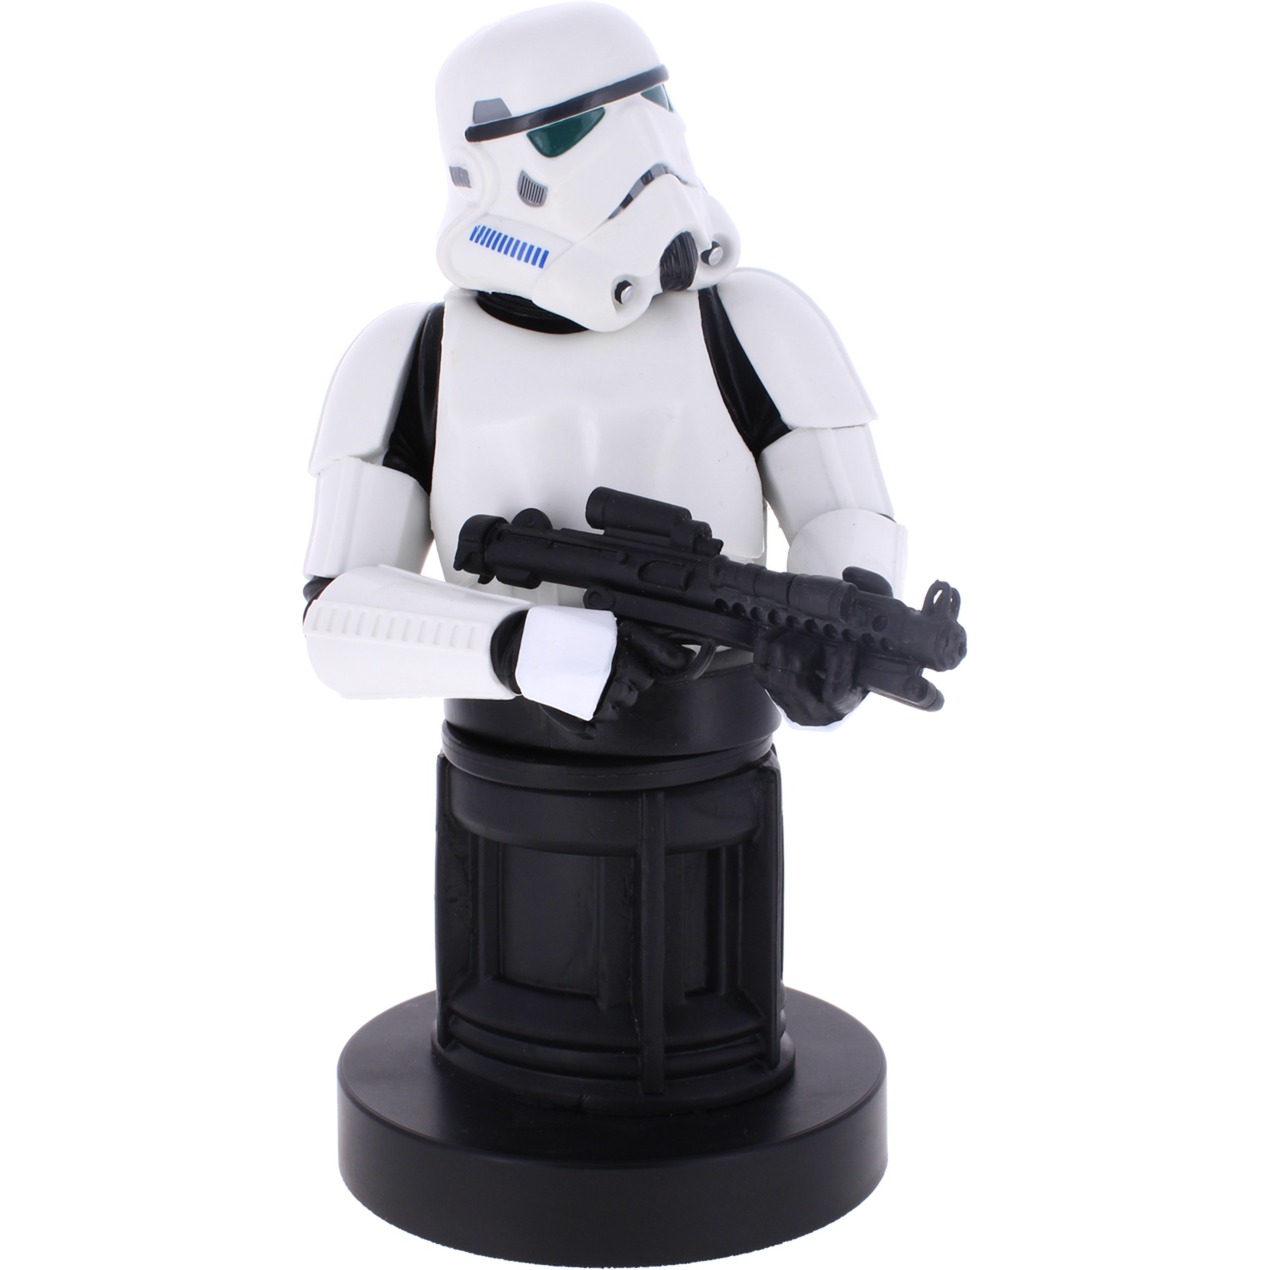 Image of Alternate - Star Wars Stormtrooper2021, Halterung online einkaufen bei Alternate